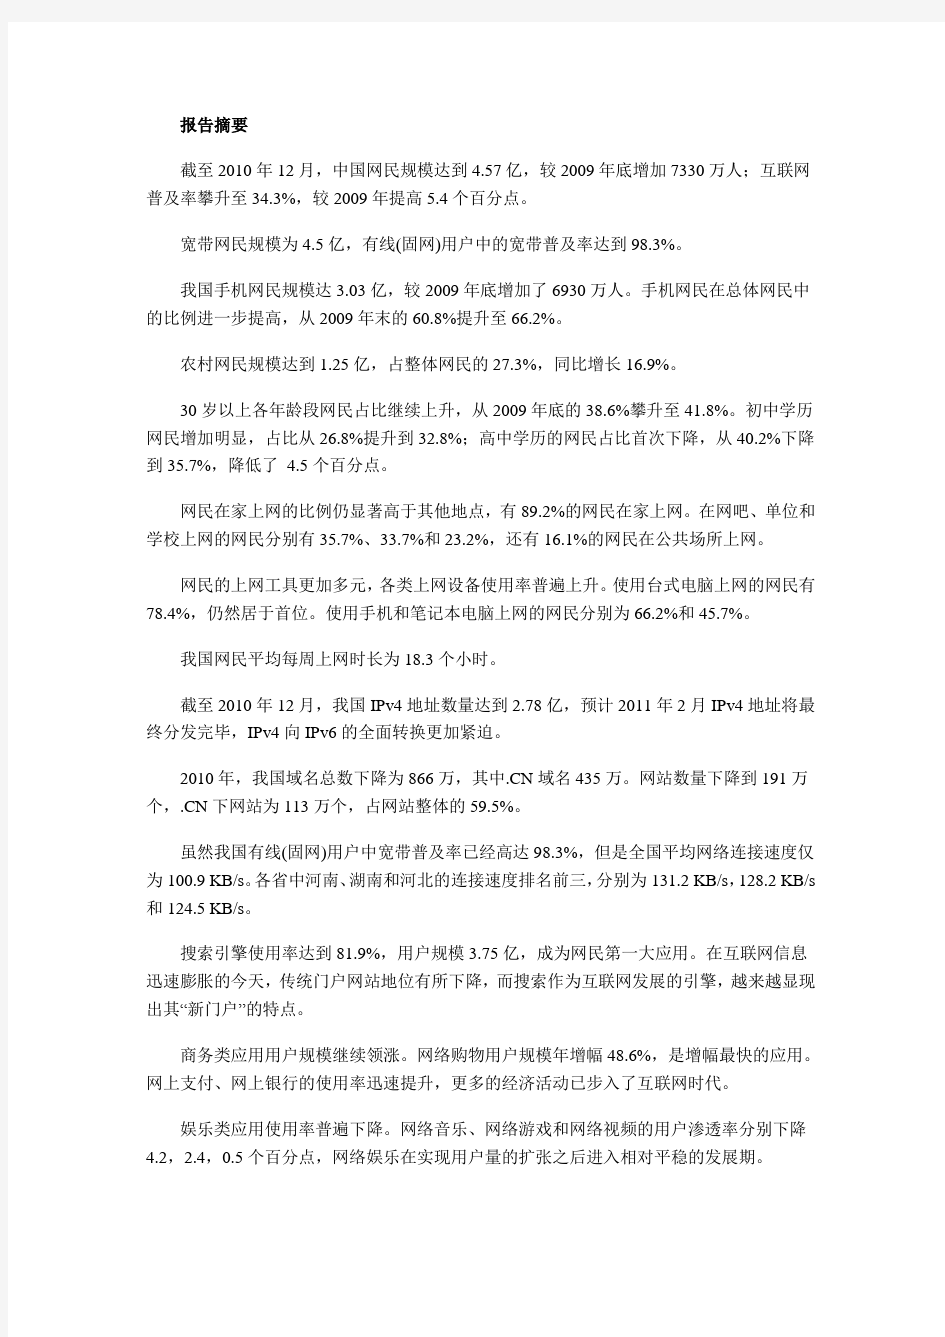 2011中国互联网报告